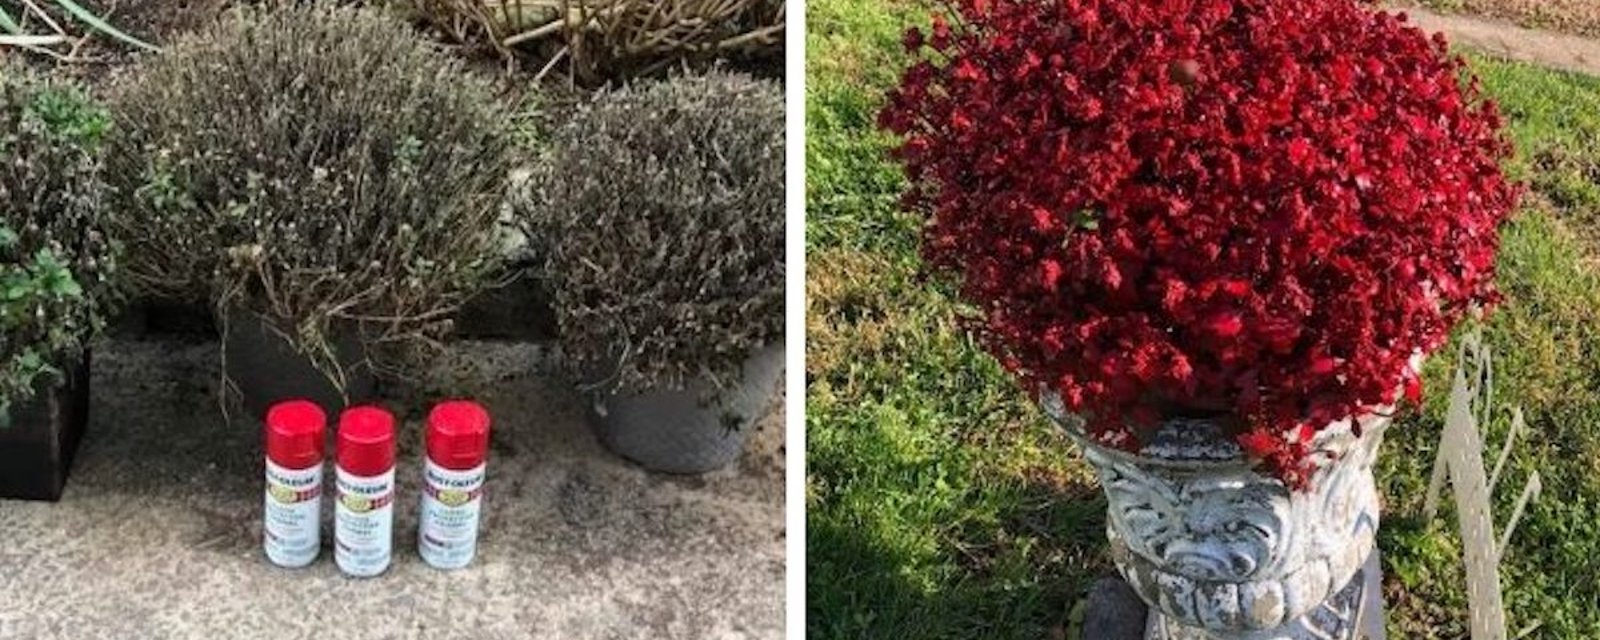 Nouvelle tendance florale: des gens peignent des plantes mortes au pistolet pour leur redonner vie